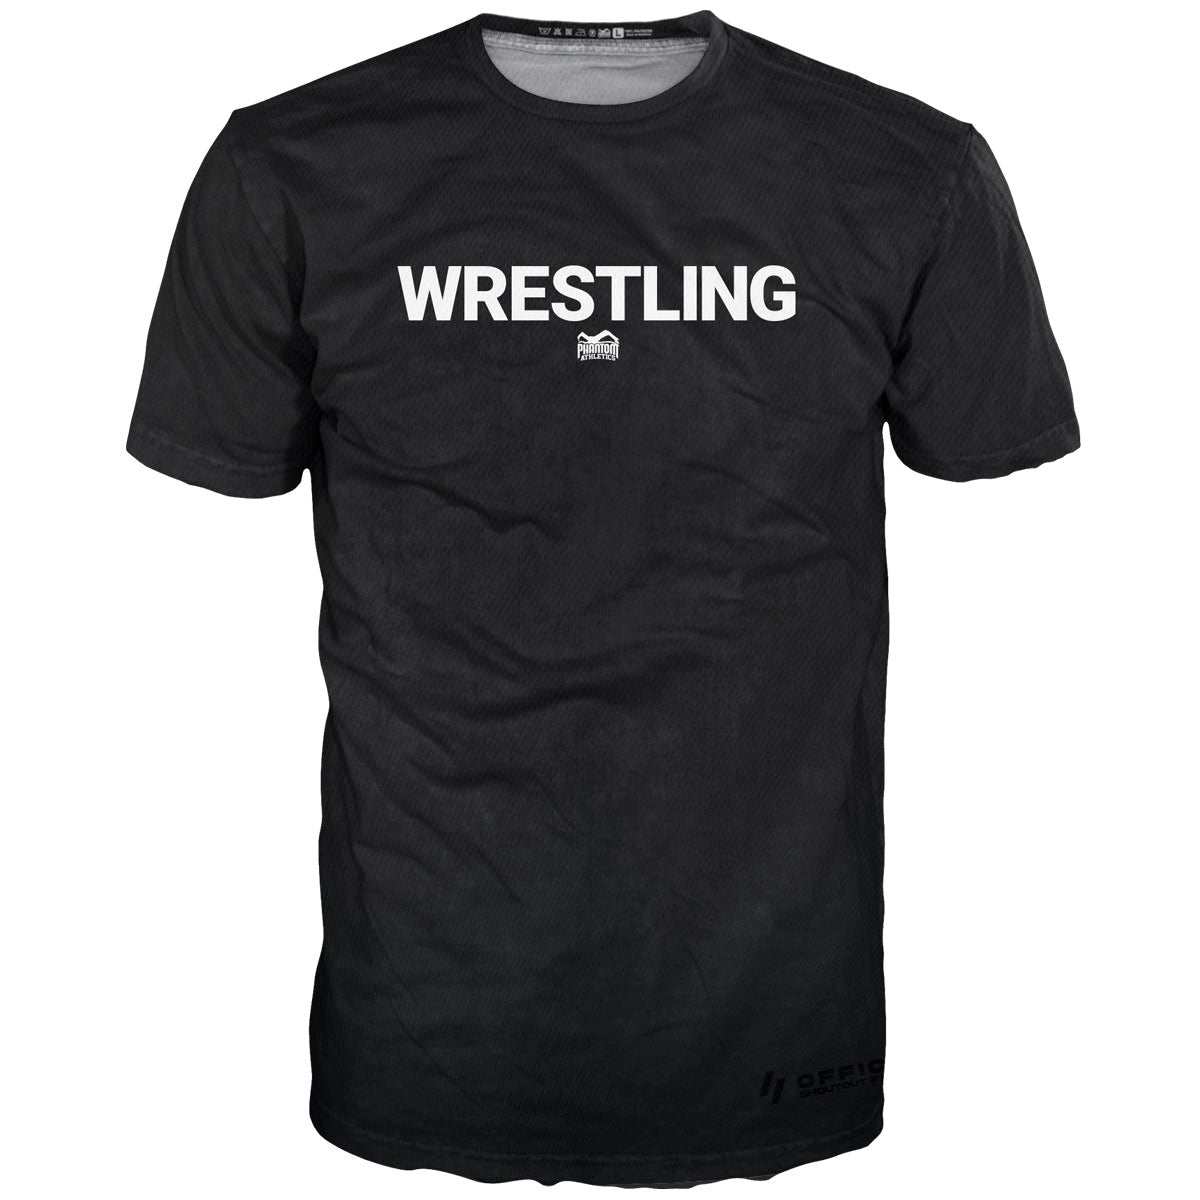 The Phantom EVO wrestling training shirt. Functional, breathable material for your wrestling training.